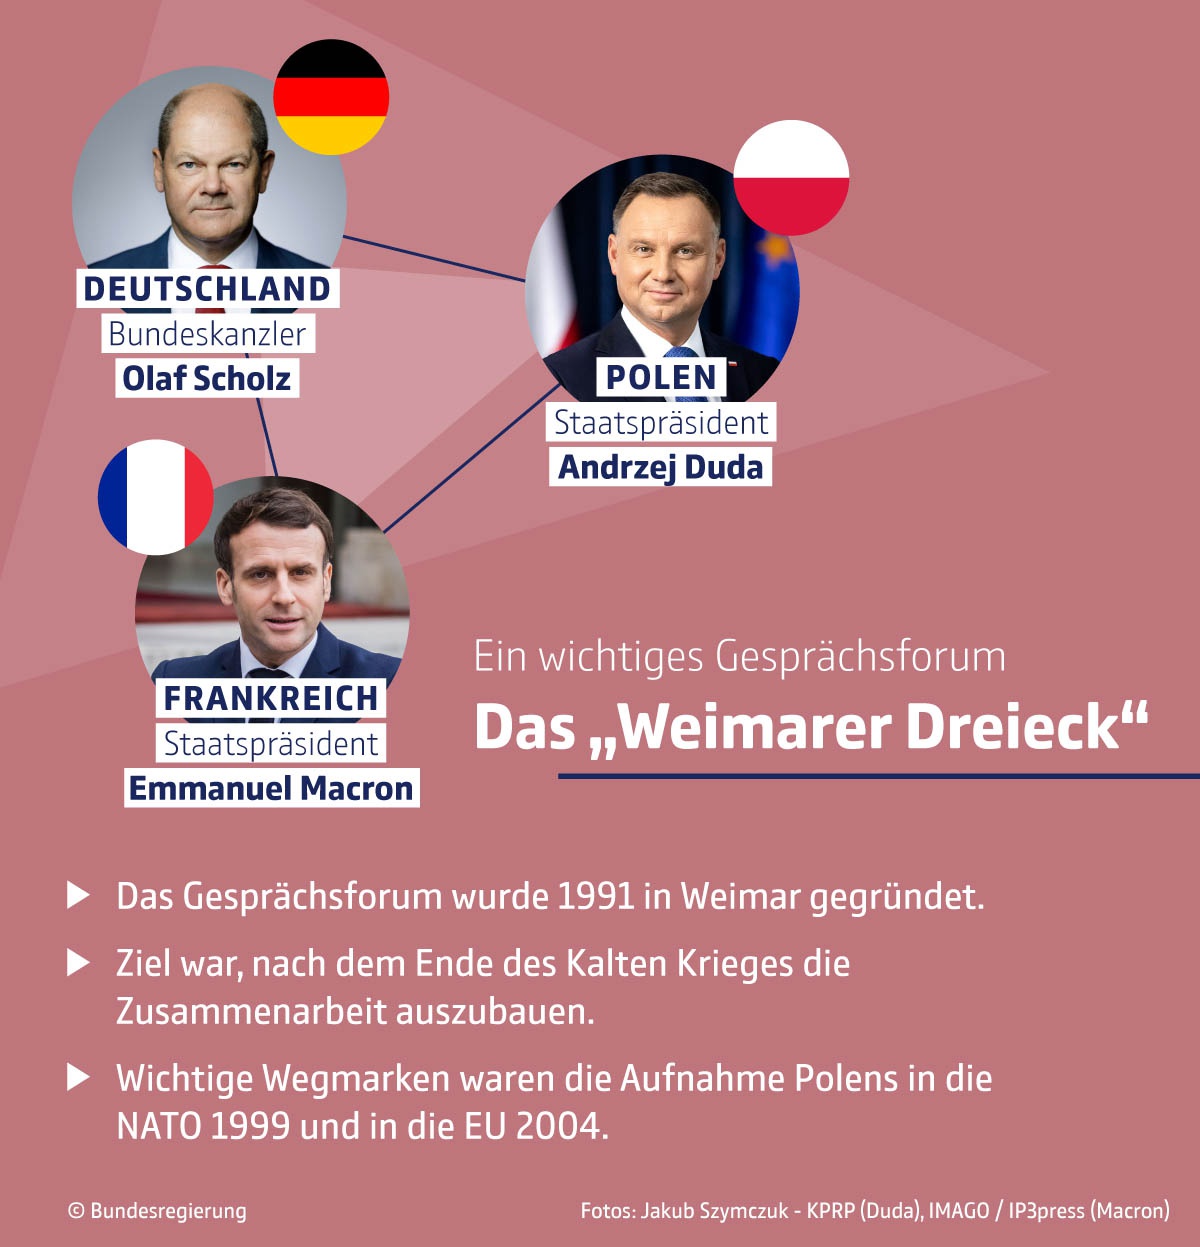 8 февраля в Берлине прошла любопытная встреча главы берлинского кабинета с президентами Франции и Польши в рамках так называемого Веймарского треугольника.